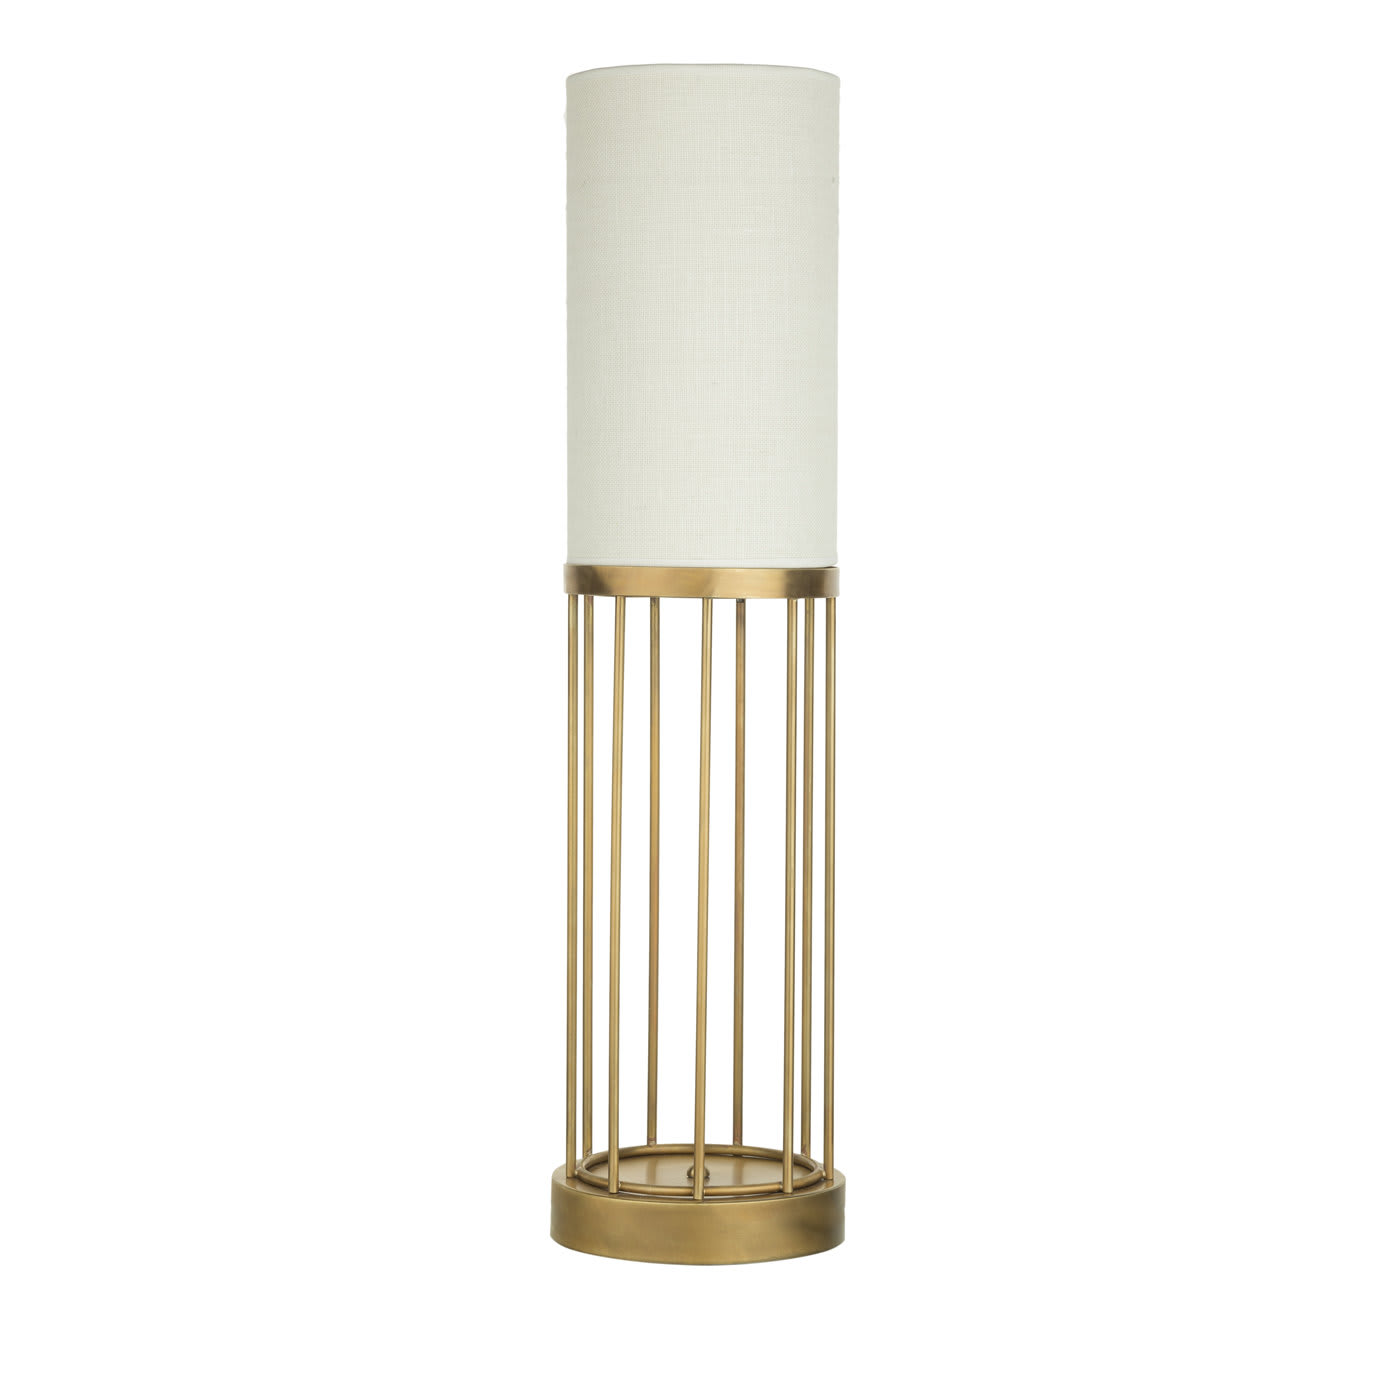 Cage 3 Desk Lamp - Bronzetto